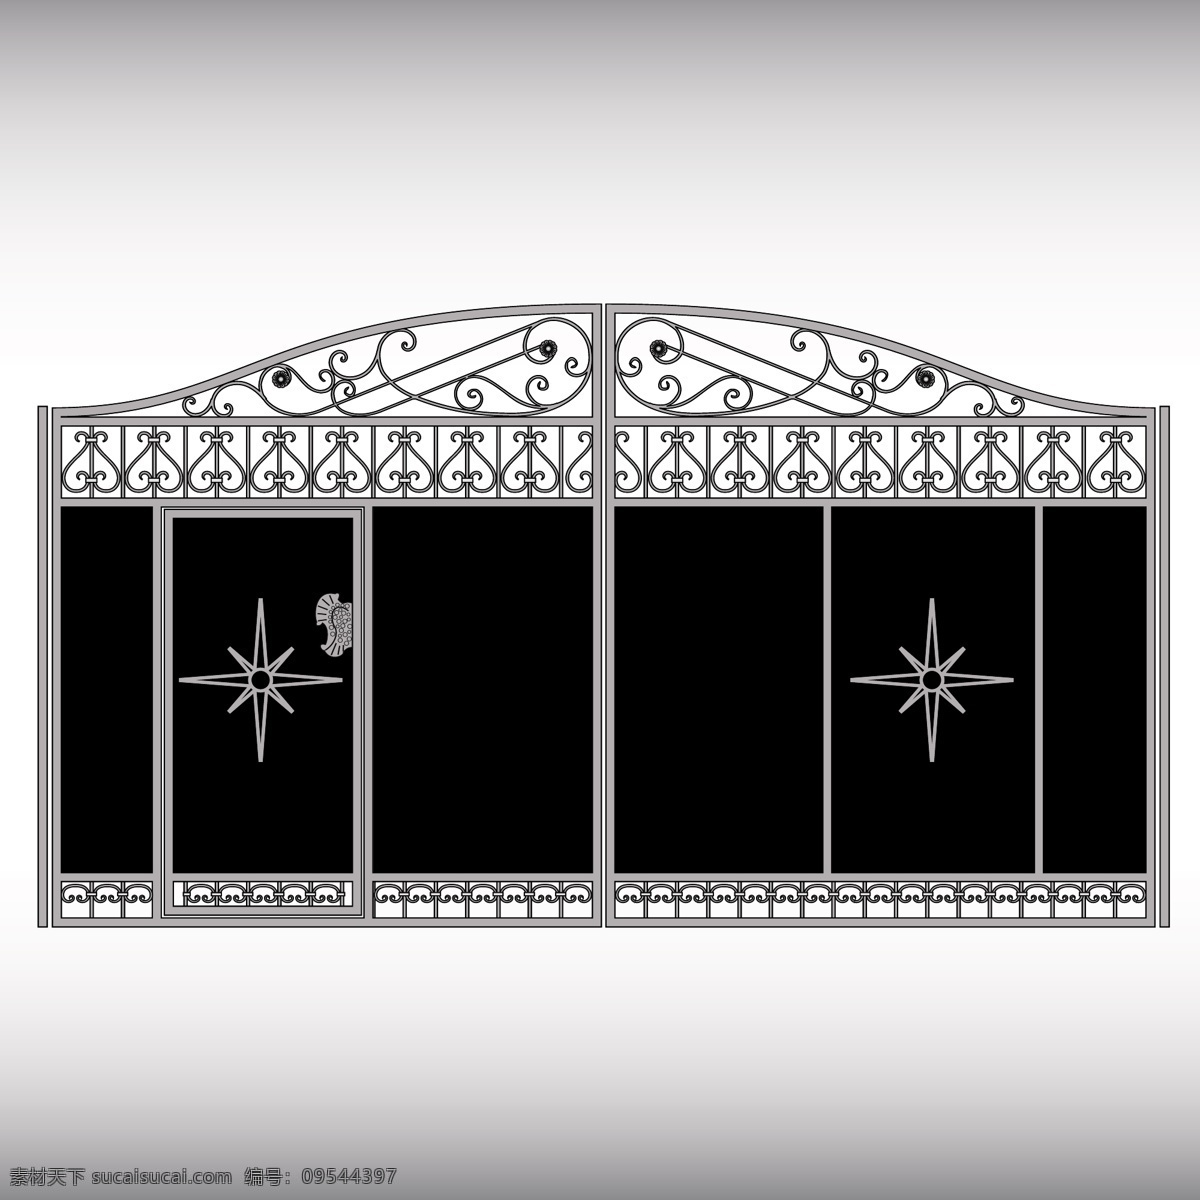 黑色铁门设计 黑色 铁门 投影 线条图 门 铁艺 其他模板 矢量素材